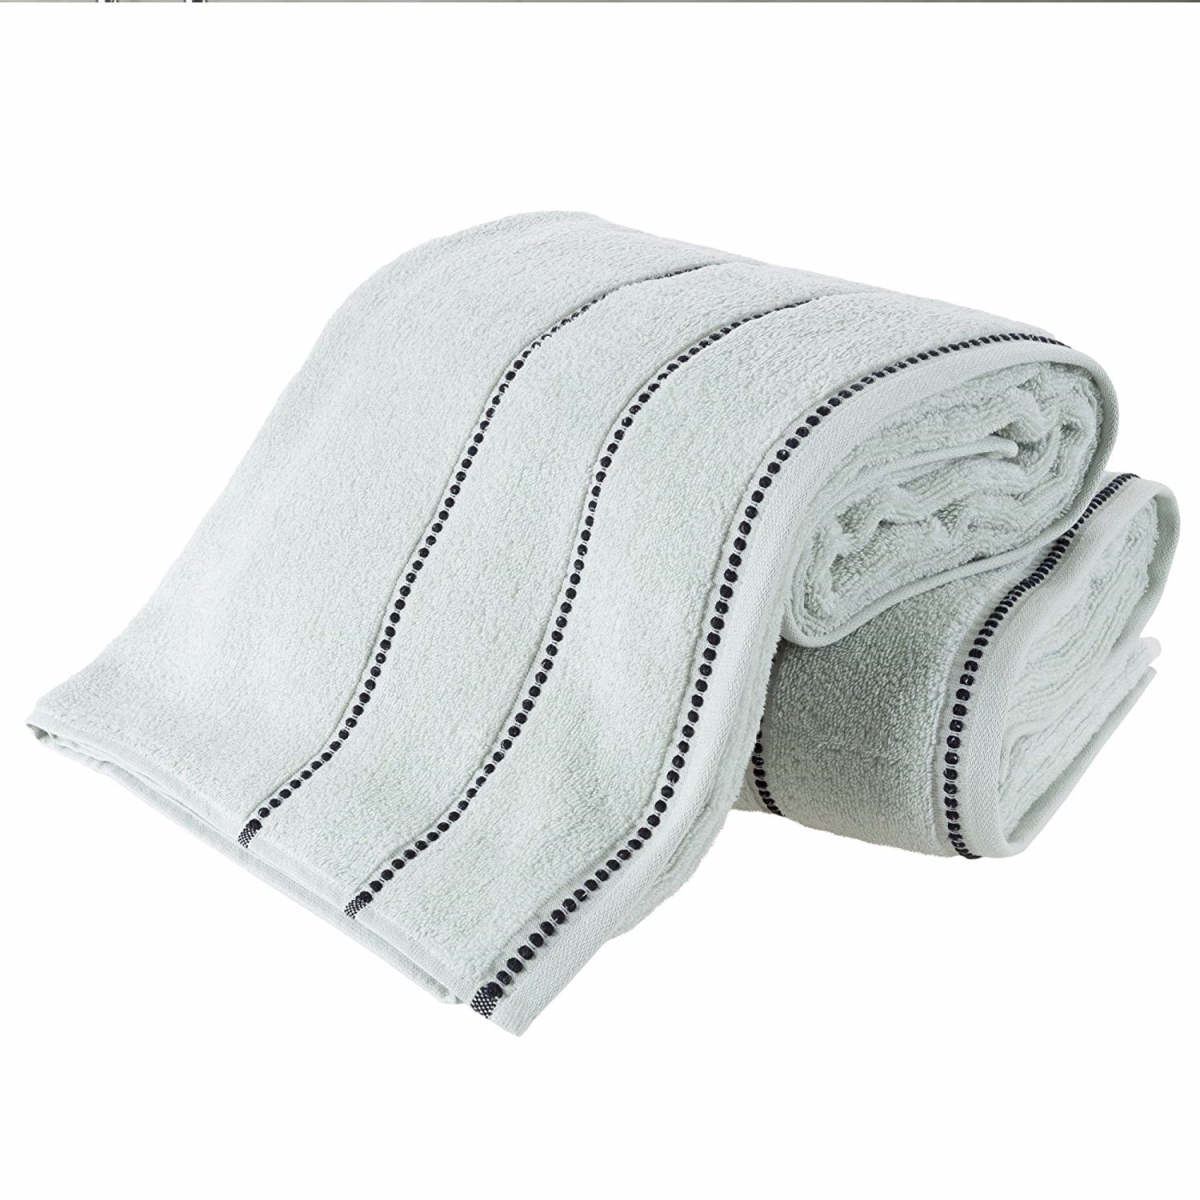 67a-82702 Luxury Cotton Towel Set, Seafoam & Black - 2 Piece